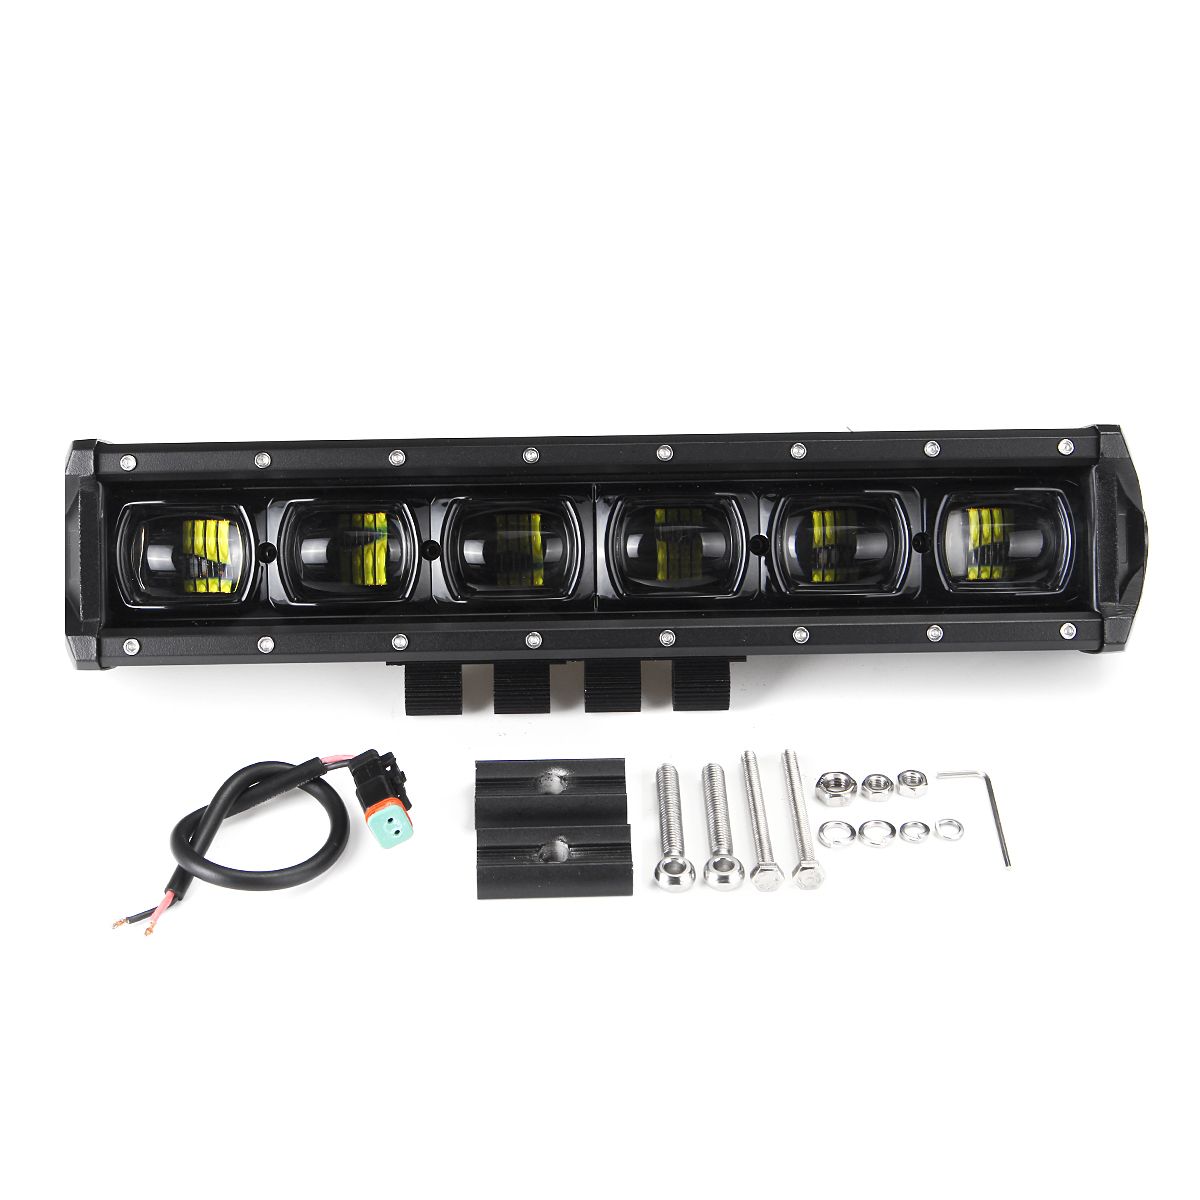 15Inch-60W-LED-Work-Light-Bars-9D-Lens-Single-Row-6000K-9-32V-For-Off-Road-4WD-Trucks-SUV-ATV-Traile-1608283